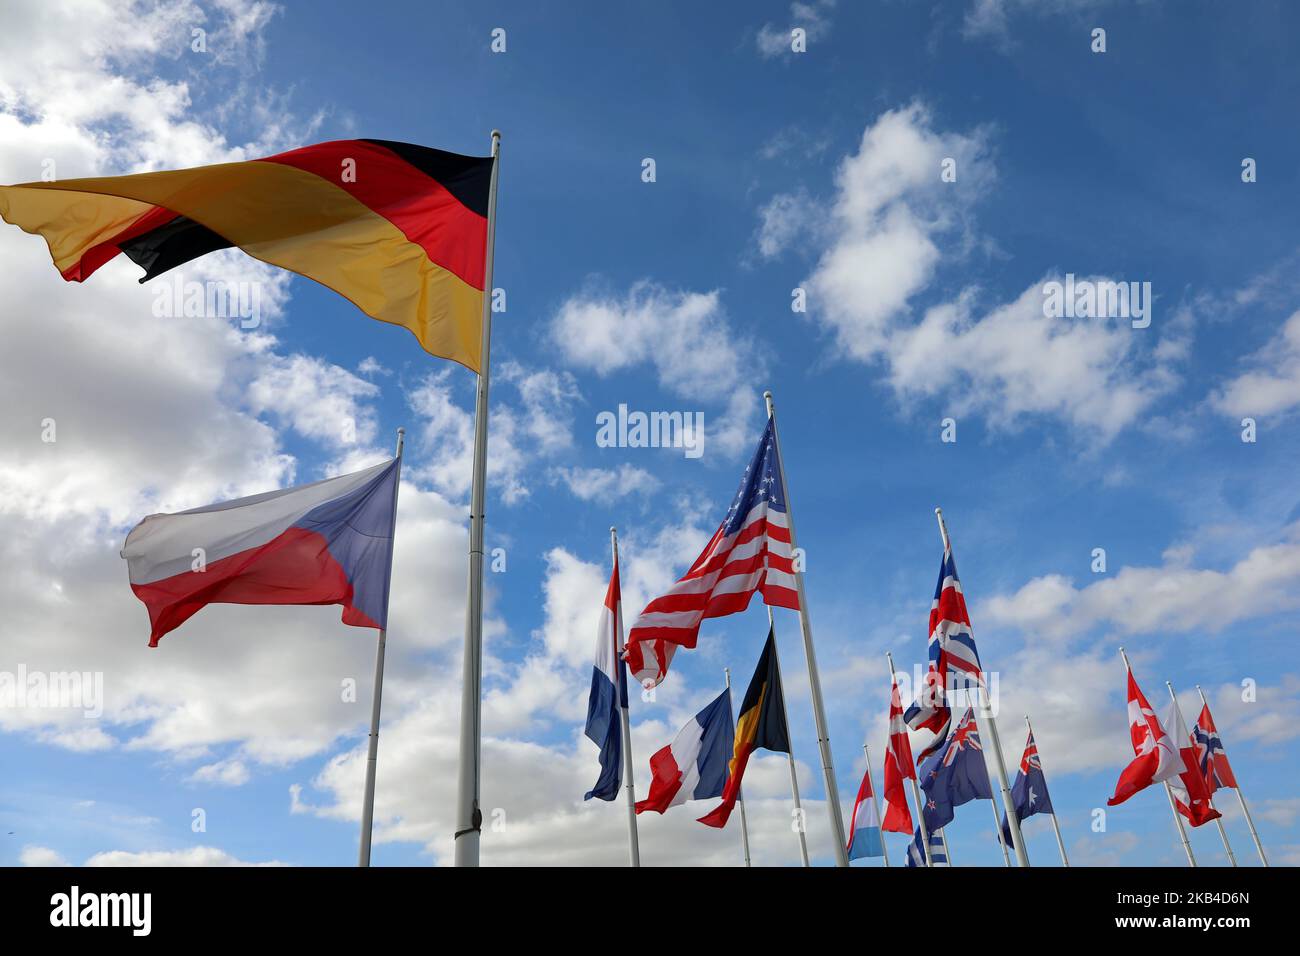 de nombreux drapeaux des nations volant pendant la réunion internationale Banque D'Images